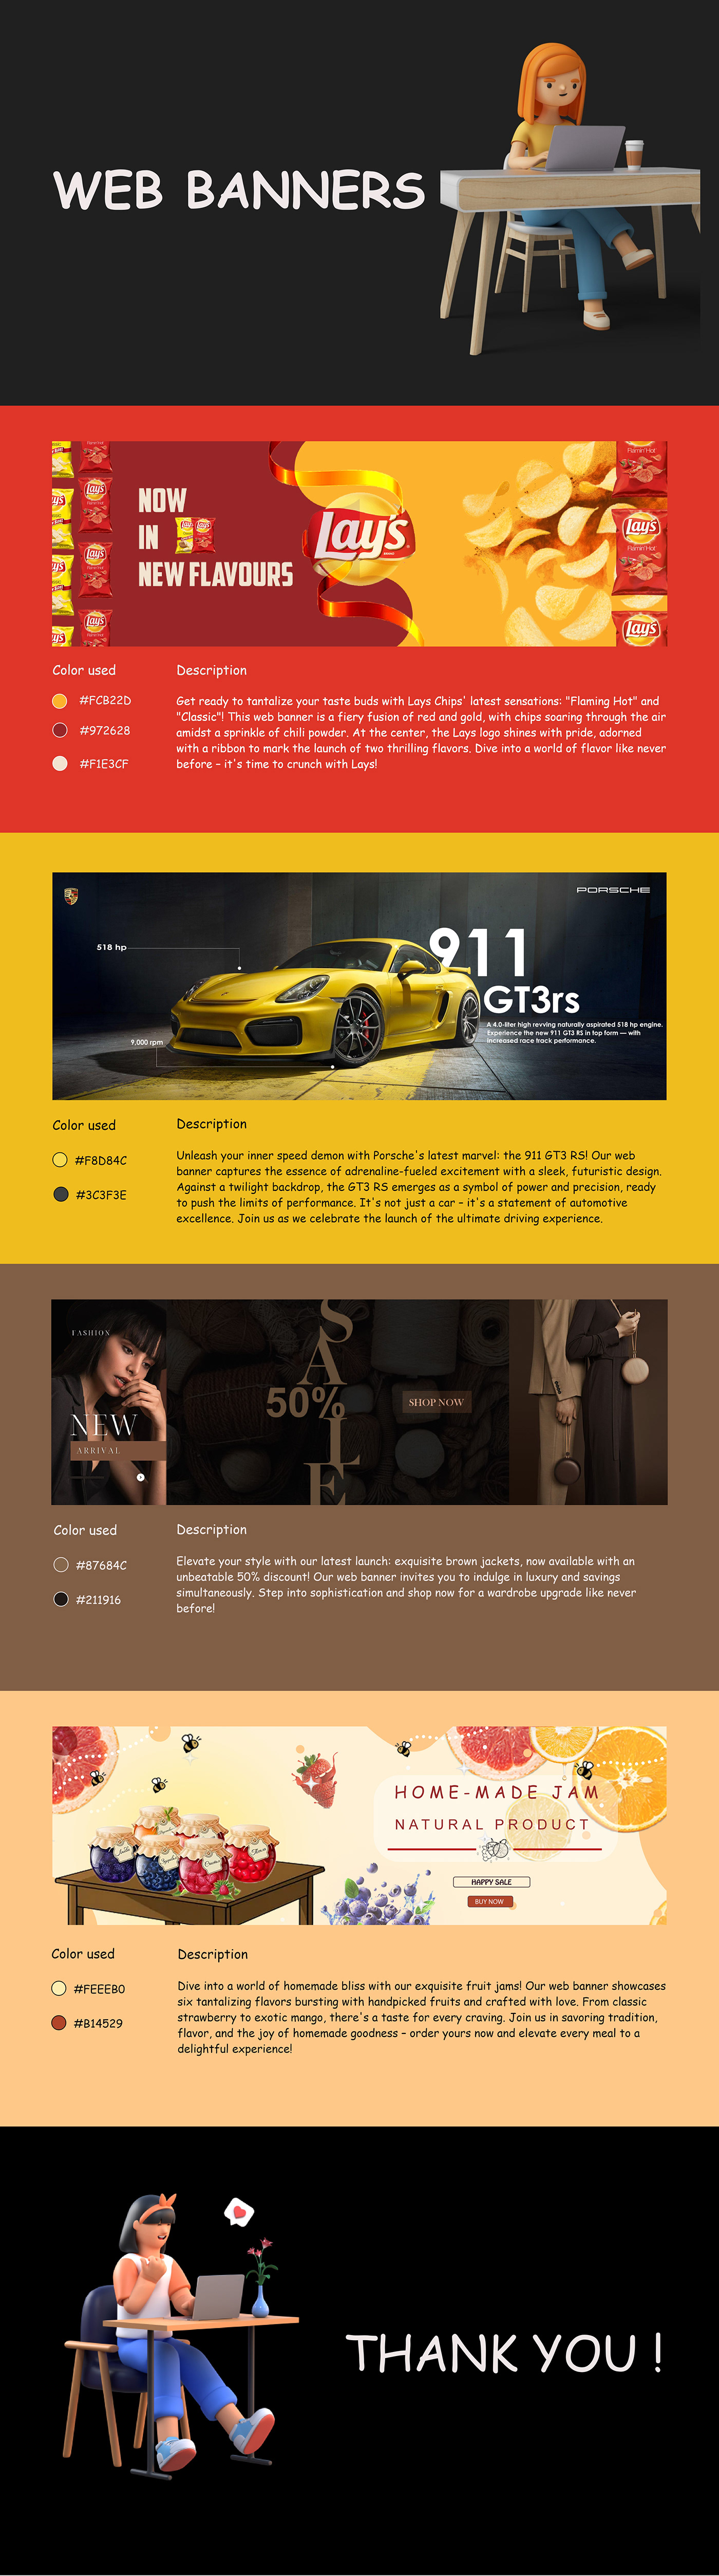 UI/UX Figma Web Design  Adobe Photoshop design Advertising  Graphic Designer graphic design  Website designer